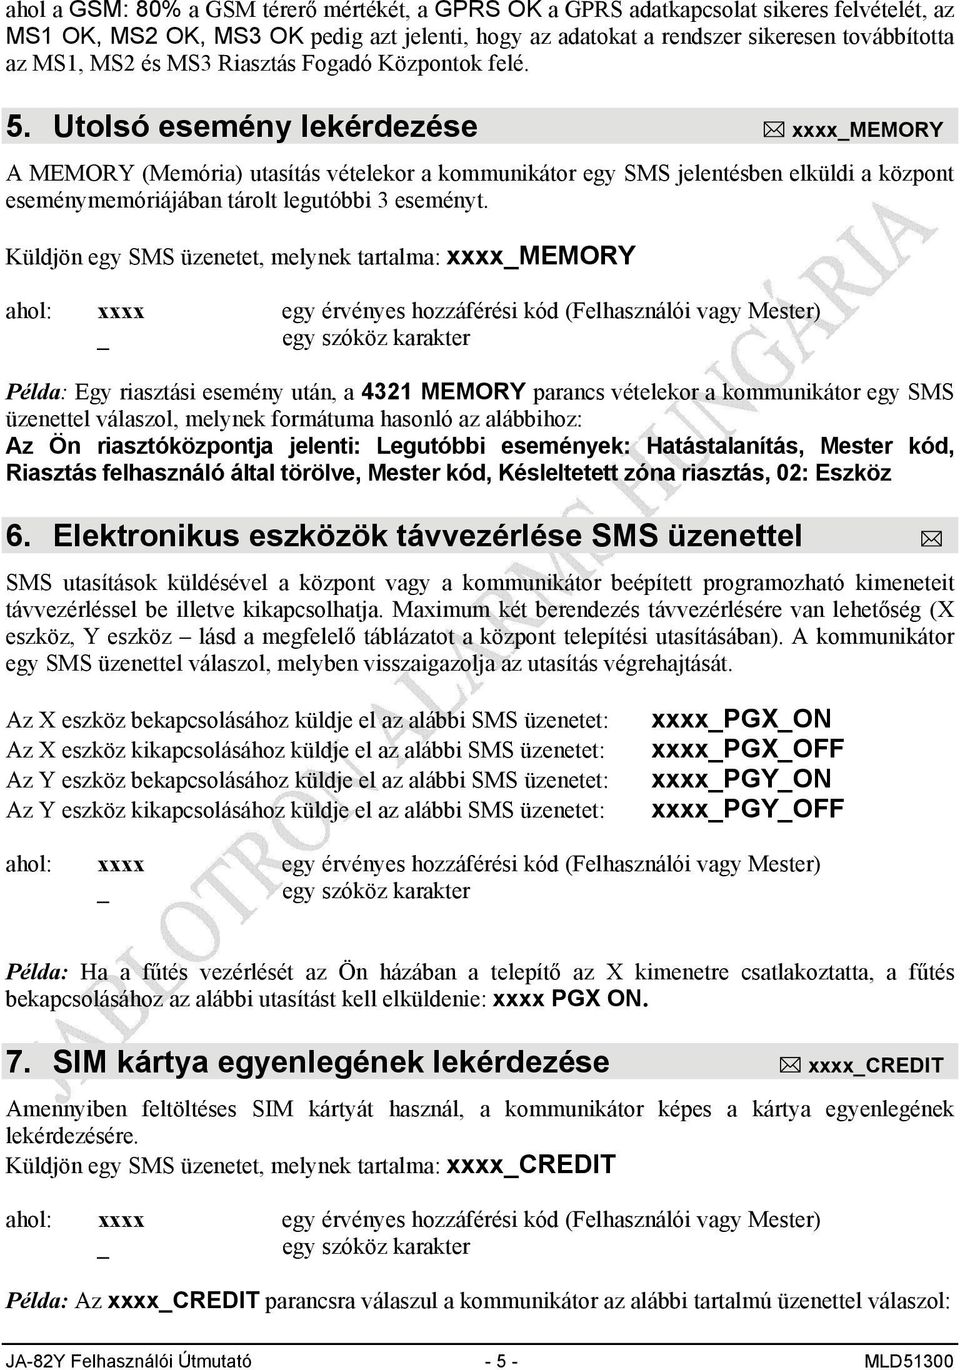 Utolsó esemény lekérdezése xxxxmemory A MEMORY (Memória) utasítás vételekor a kommunikátor egy SMS jelentésben elküldi a központ eseménymemóriájában tárolt legutóbbi 3 eseményt.